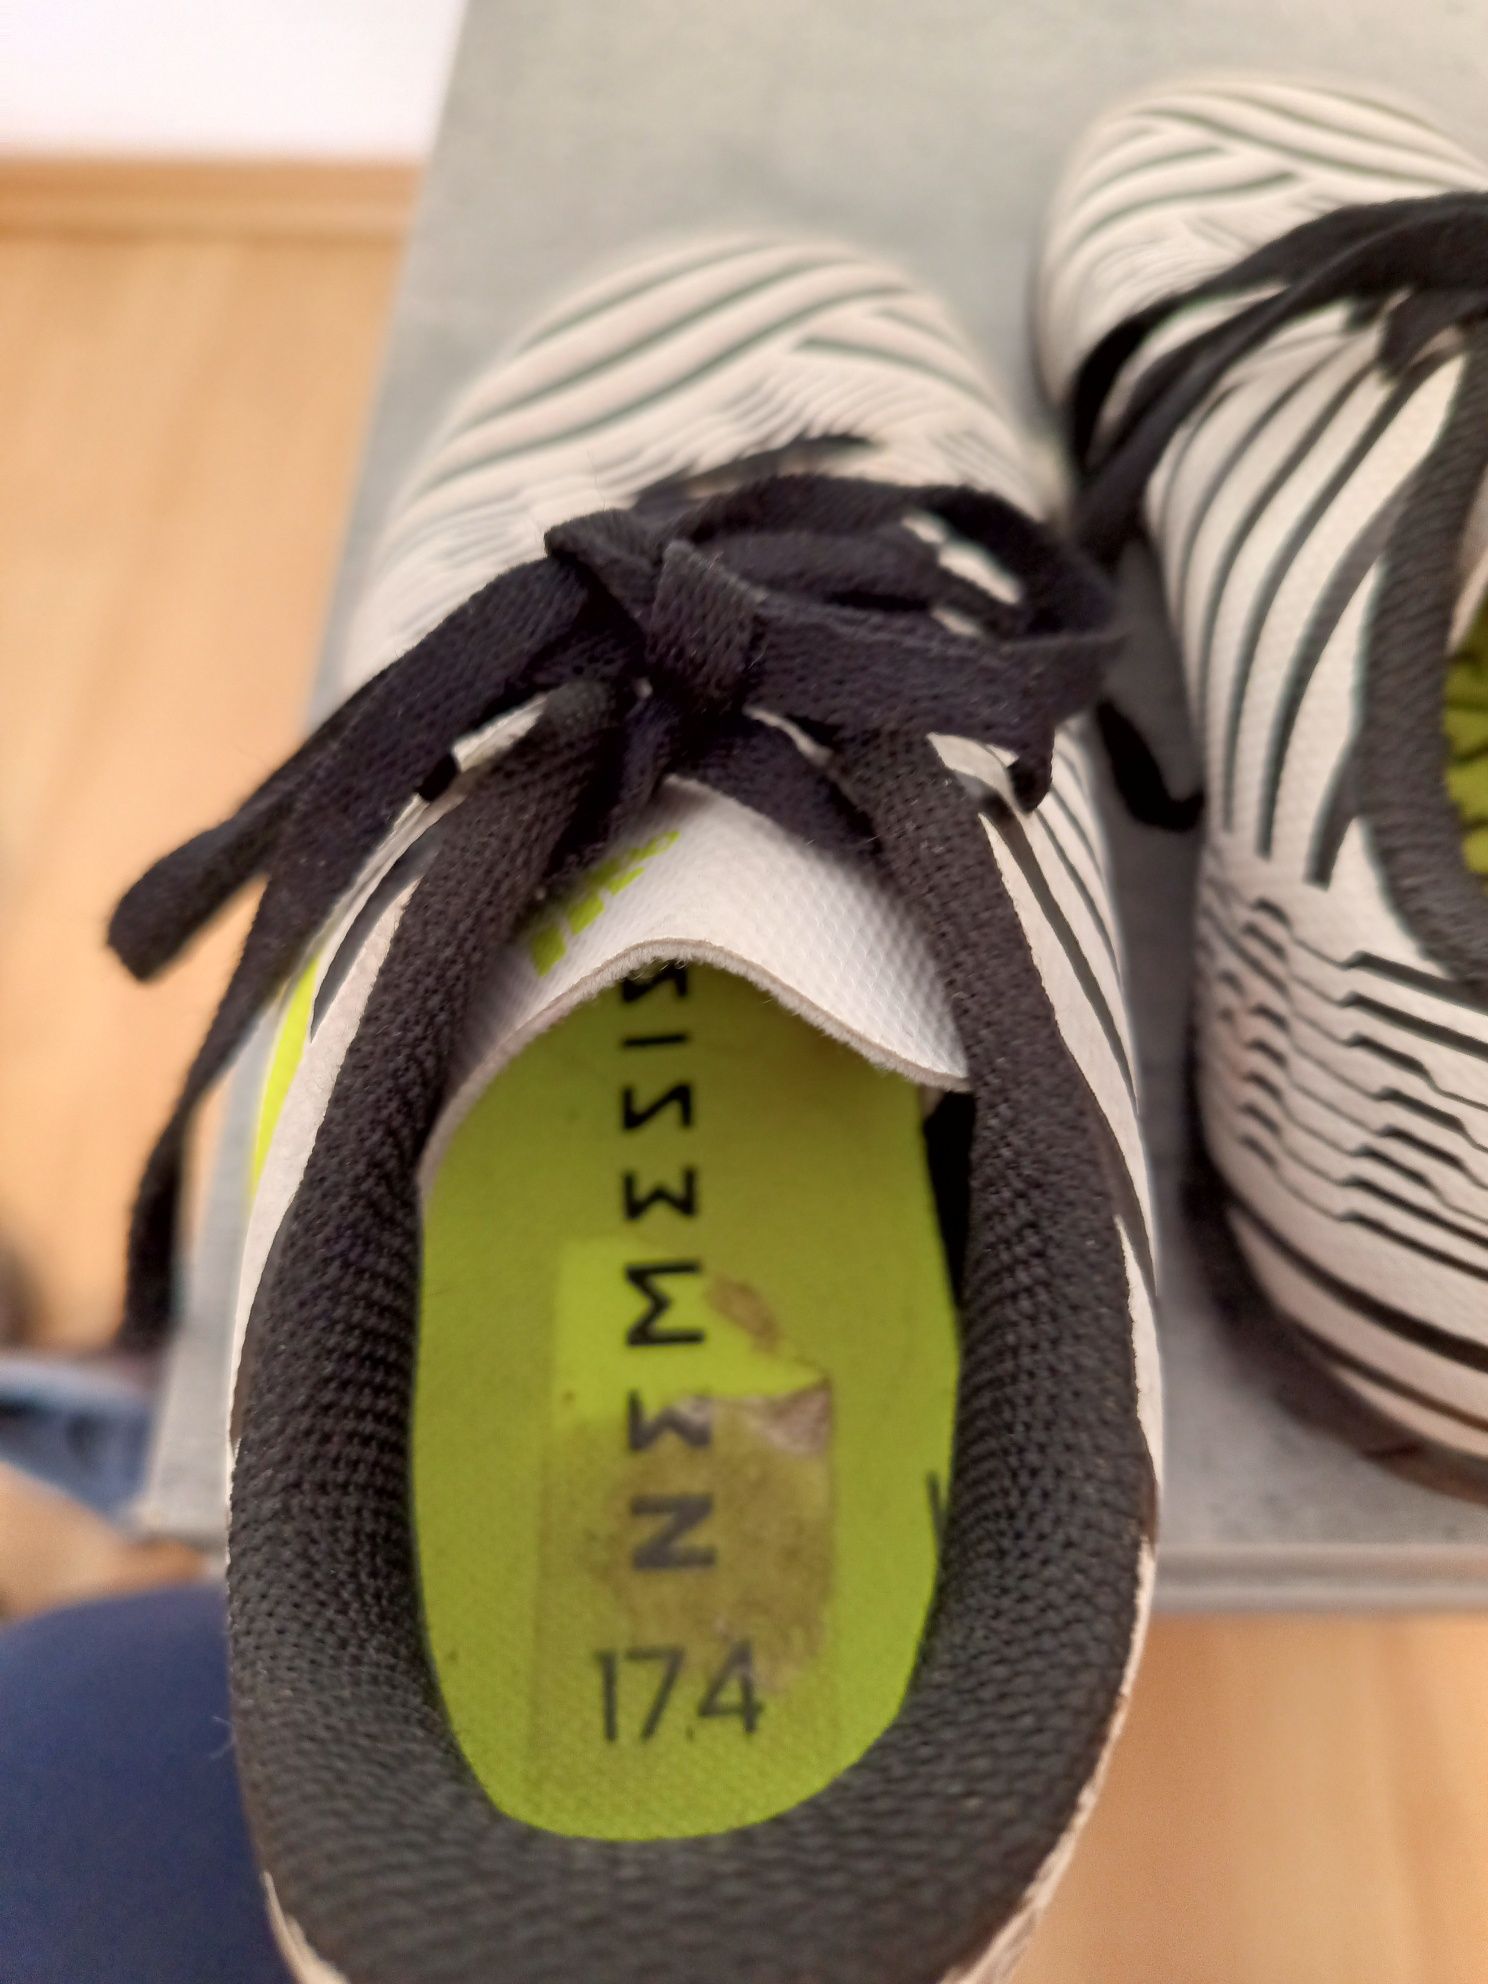 Buty piłkarskie Adidas Nemezis 17.4 rozm. 31,5